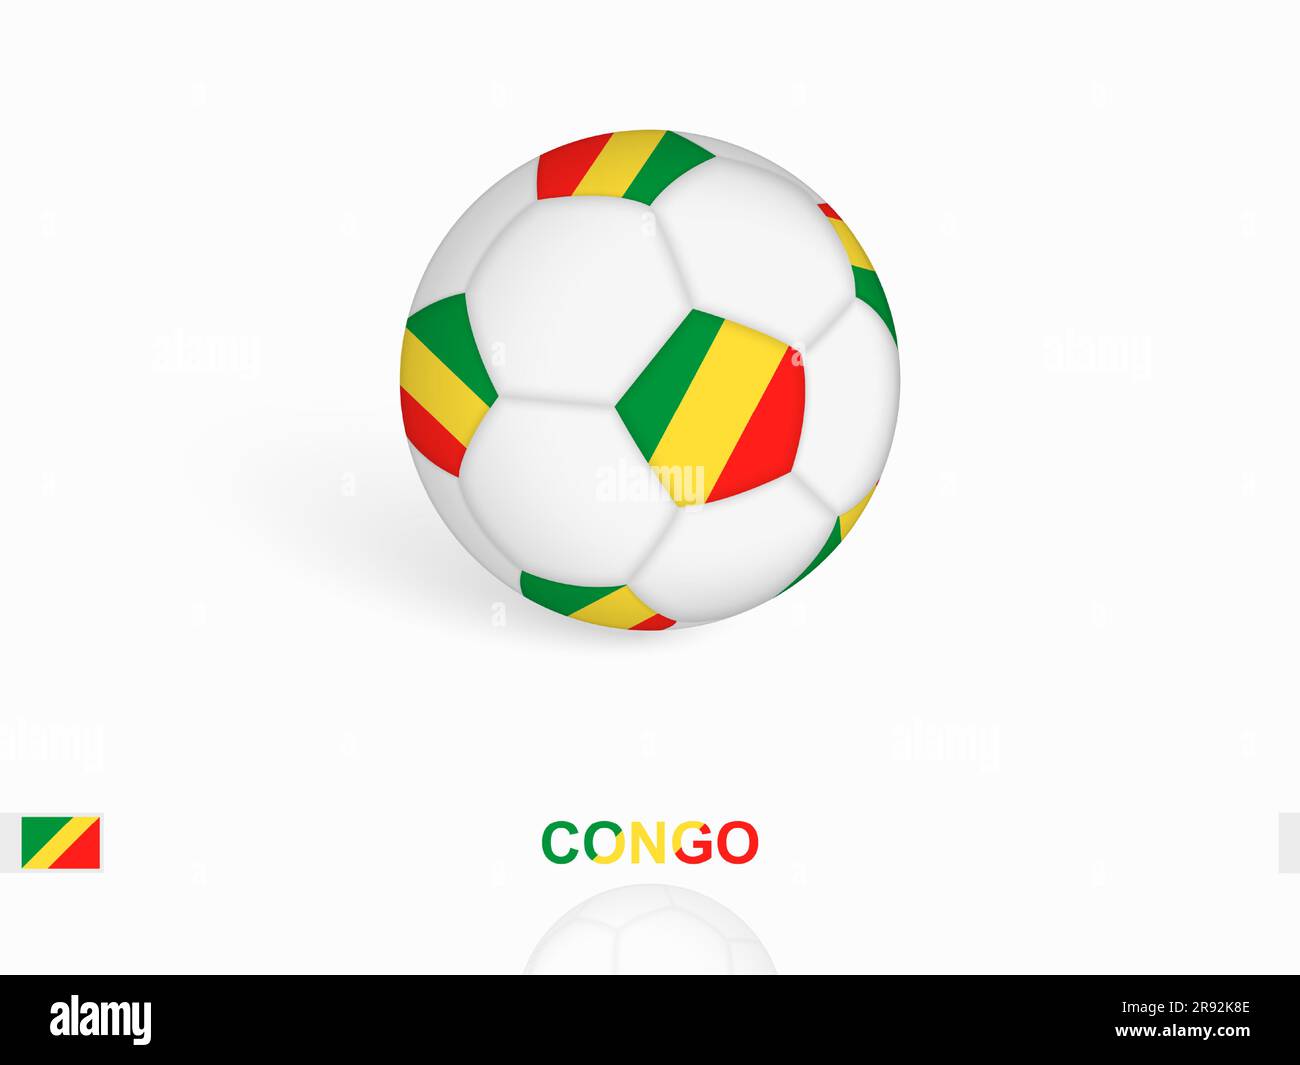 Ballon de football avec drapeau du Congo, équipement de sport de football. Illustration vectorielle. Illustration de Vecteur